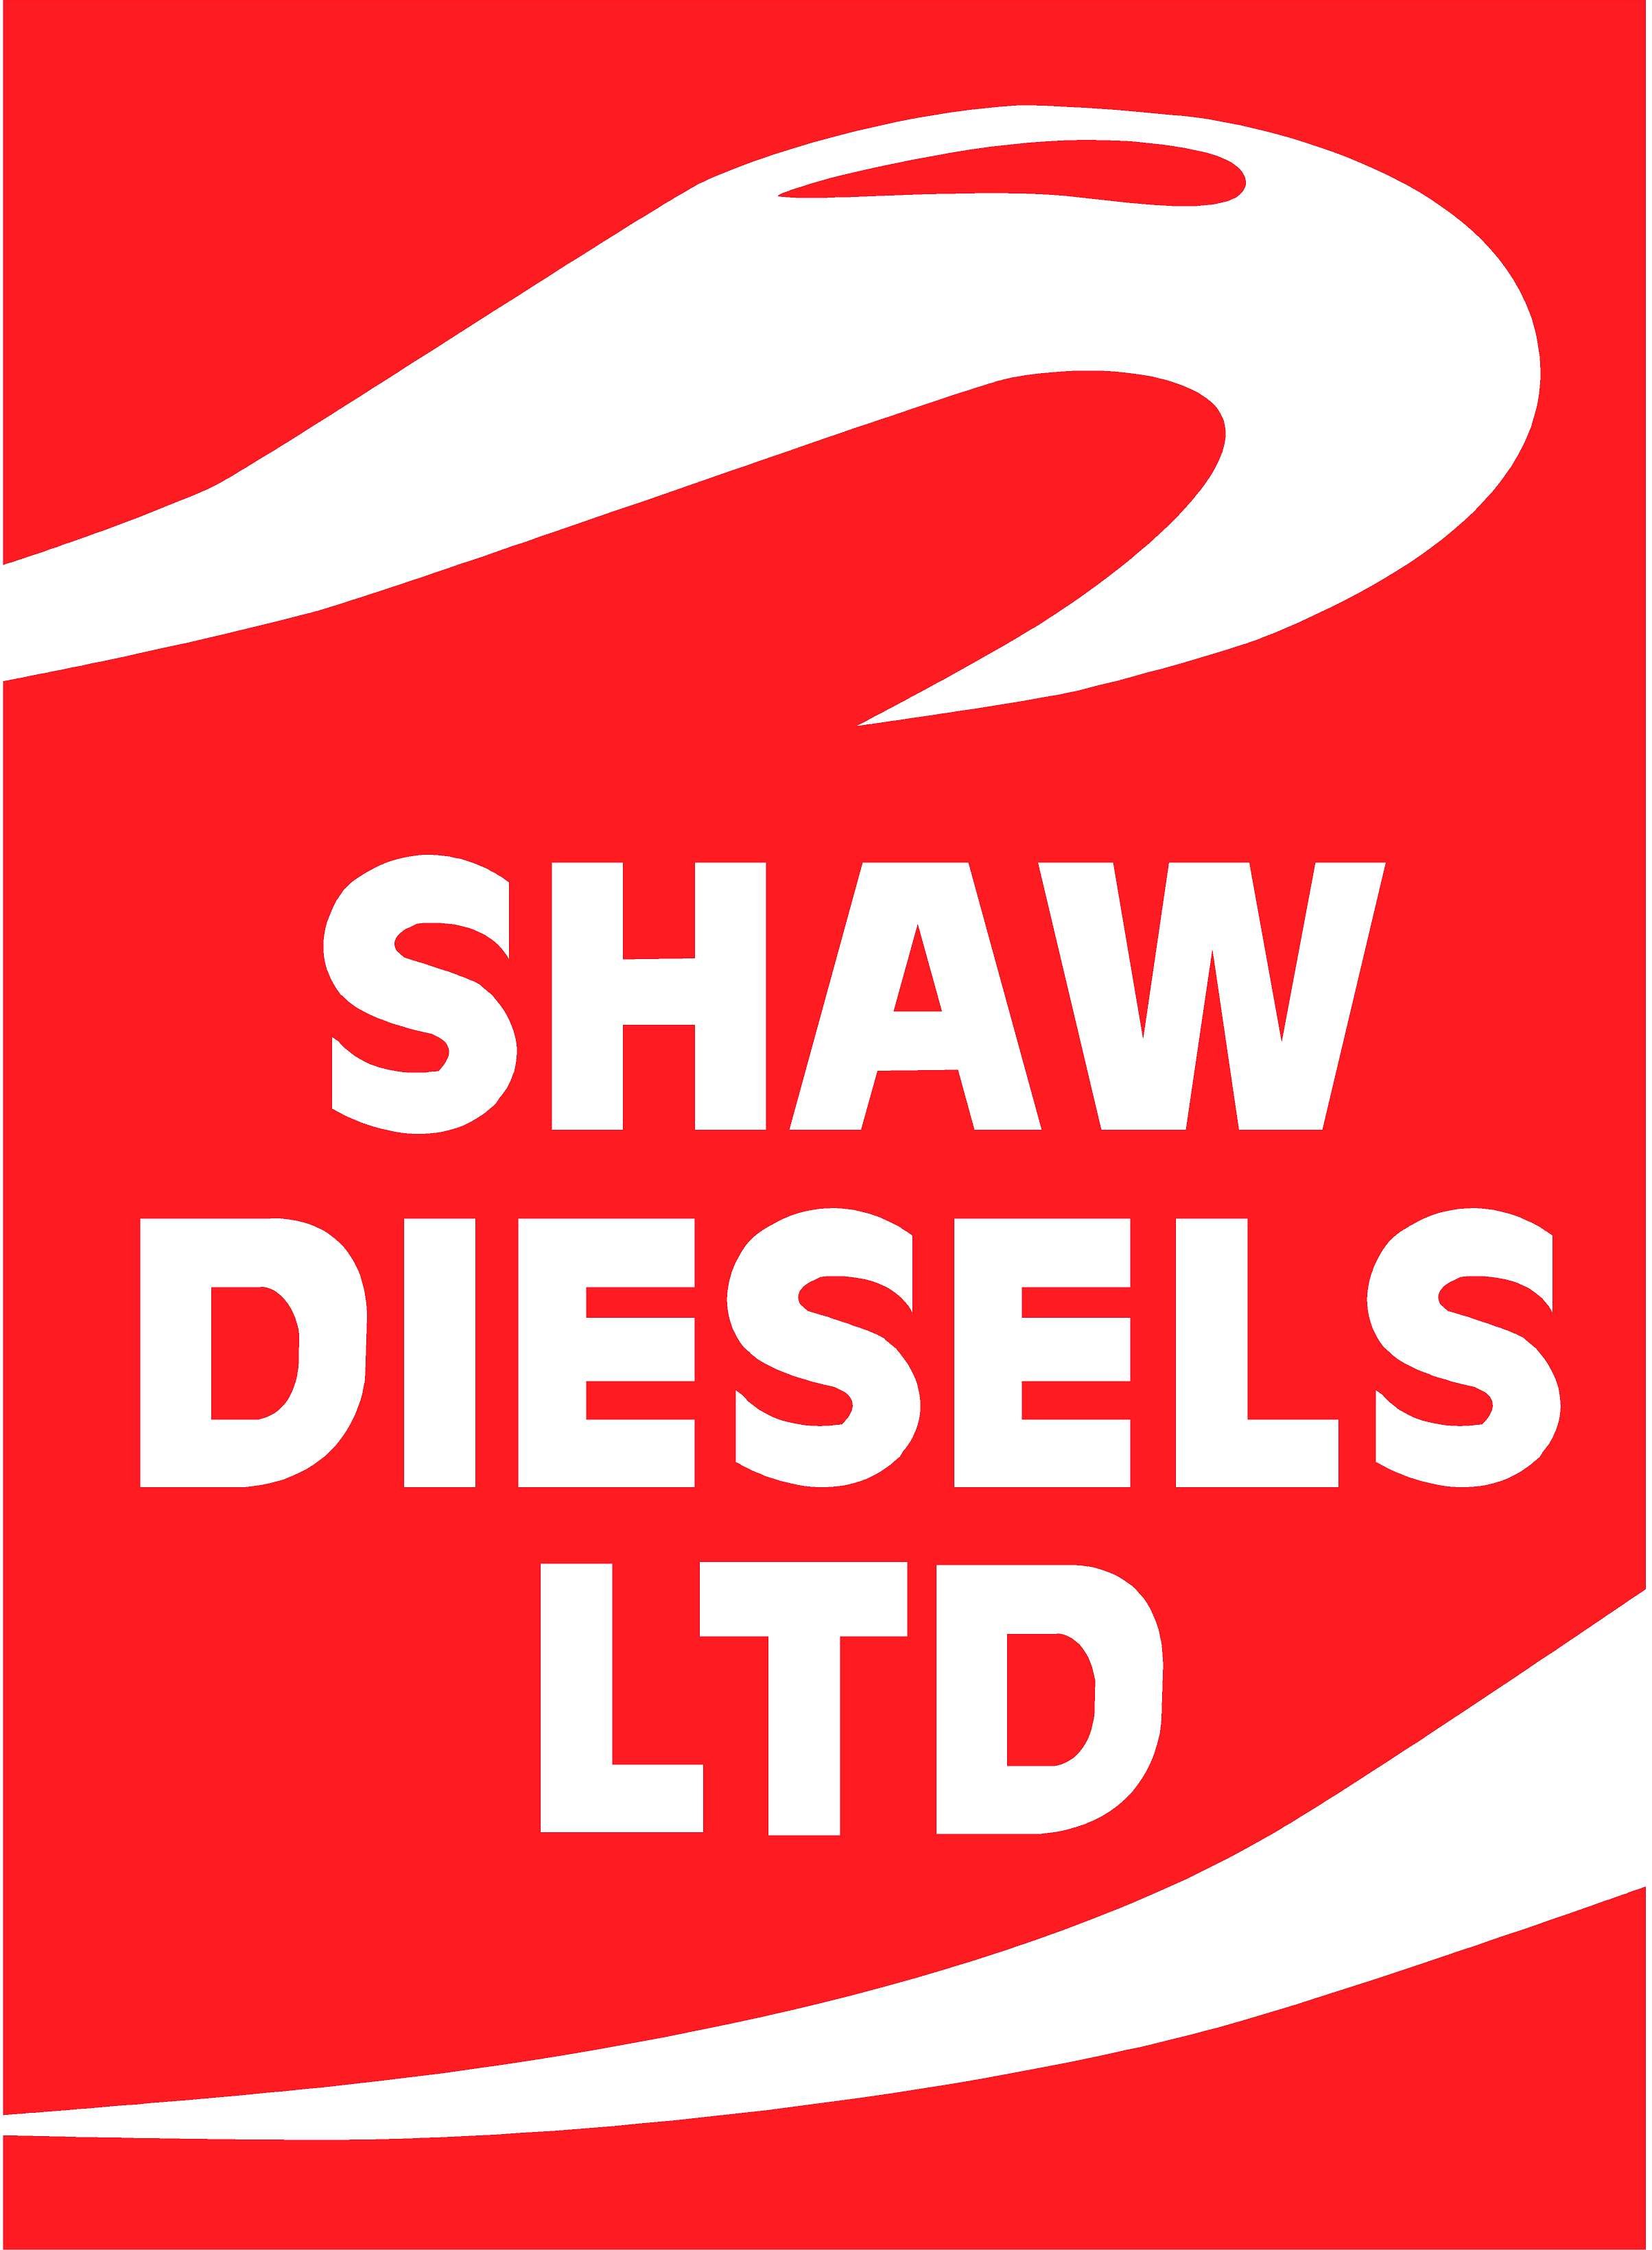 Shaw Diesels - logo.jpg